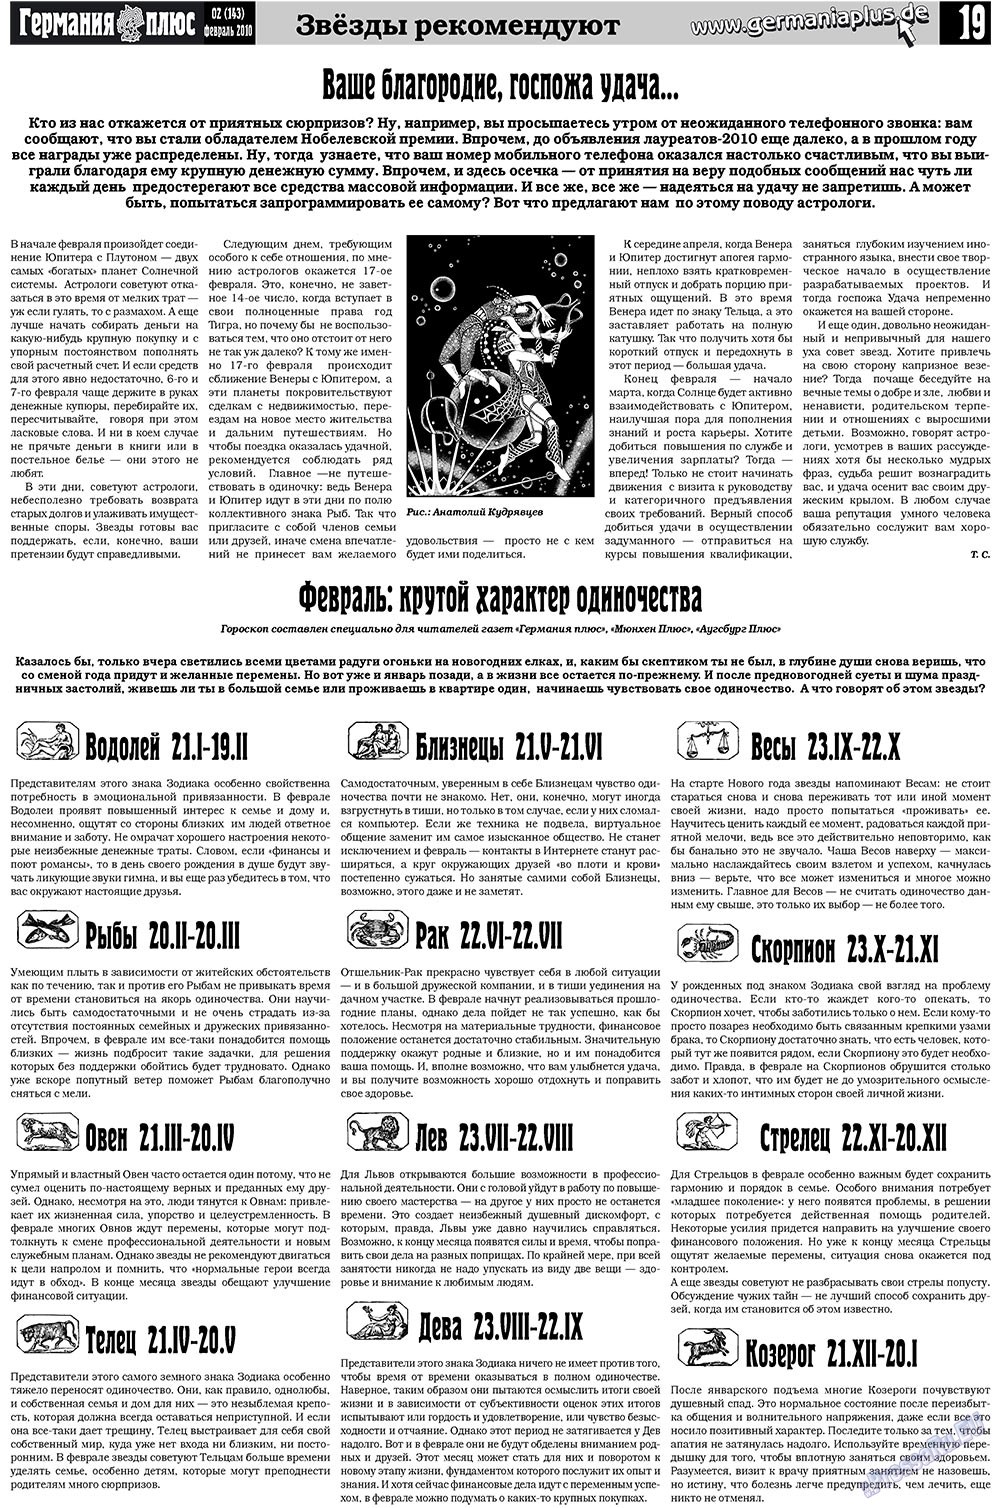 Германия плюс (газета). 2010 год, номер 2, стр. 19